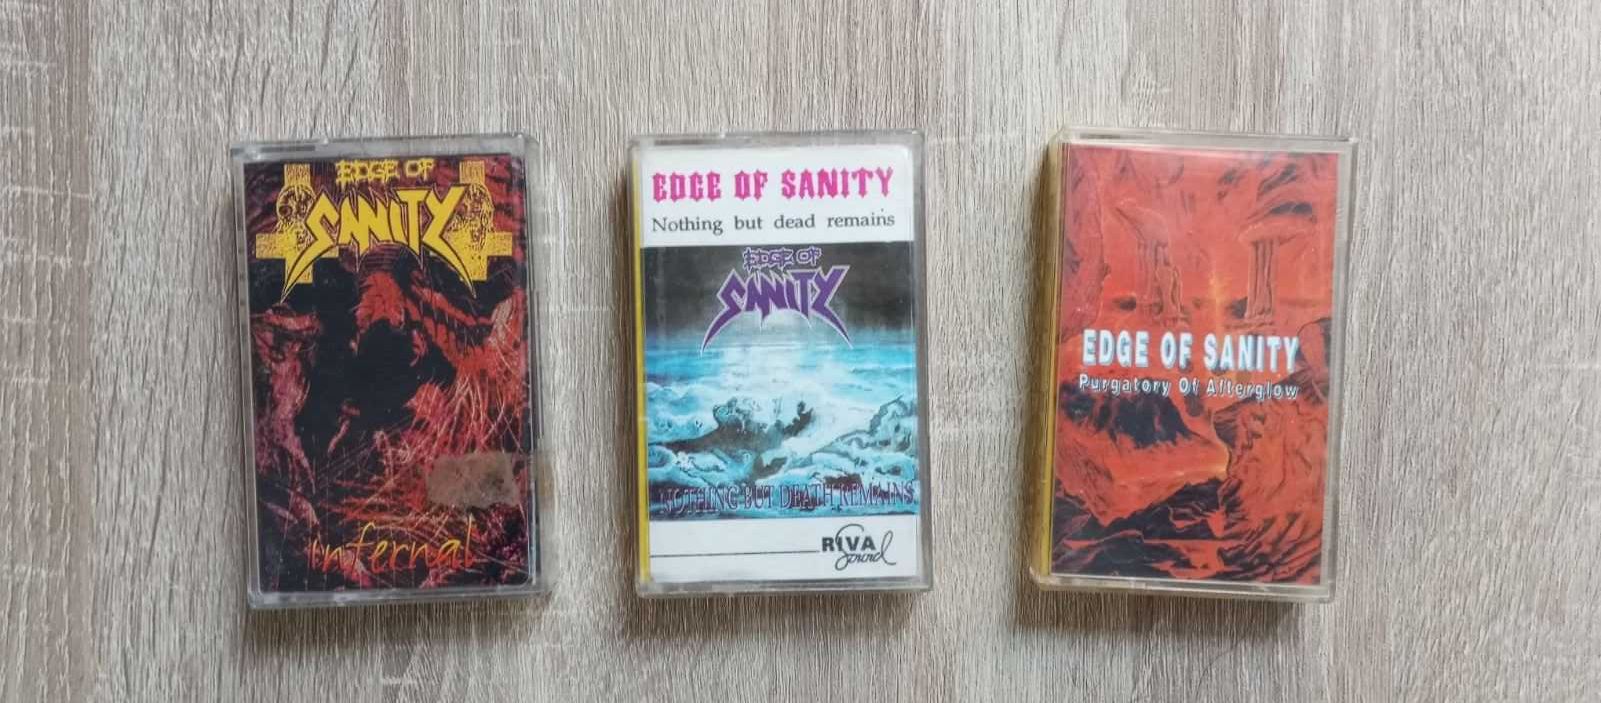 Метъл аудио касети - Edge of Sanity и the Gathering